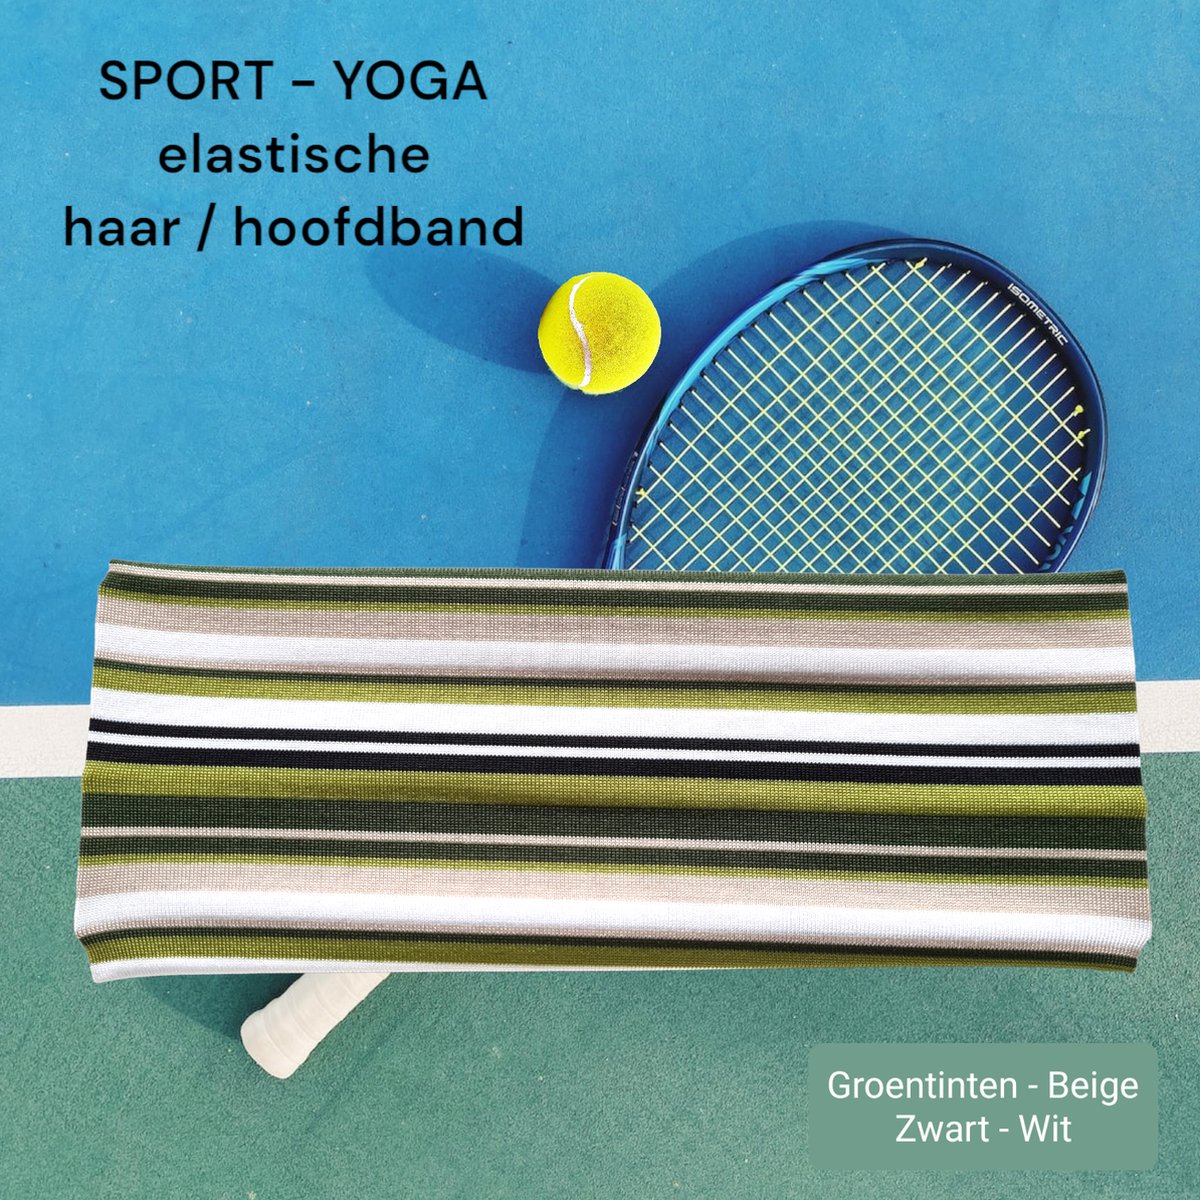 SPORT - Haarband Hoofdband - 7,5 cm - 2 stuks - Groen tinten Beige Zwart Wit - Strepen - Casual Sport Yoga - Elastische Stof